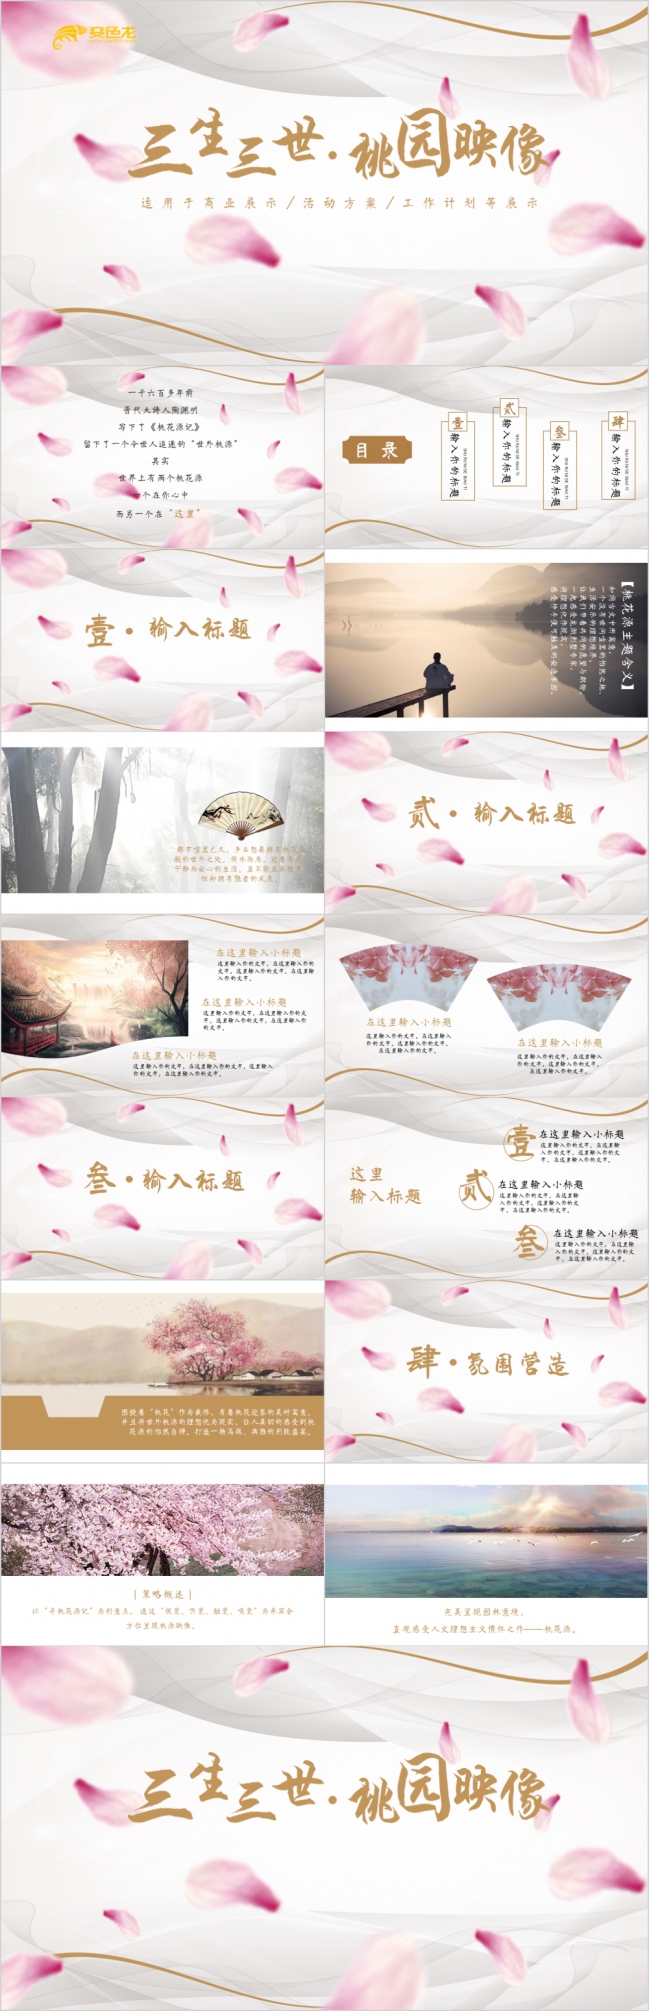 桃花印象复古中国风桃花源记广告设计方案展示PPT模版